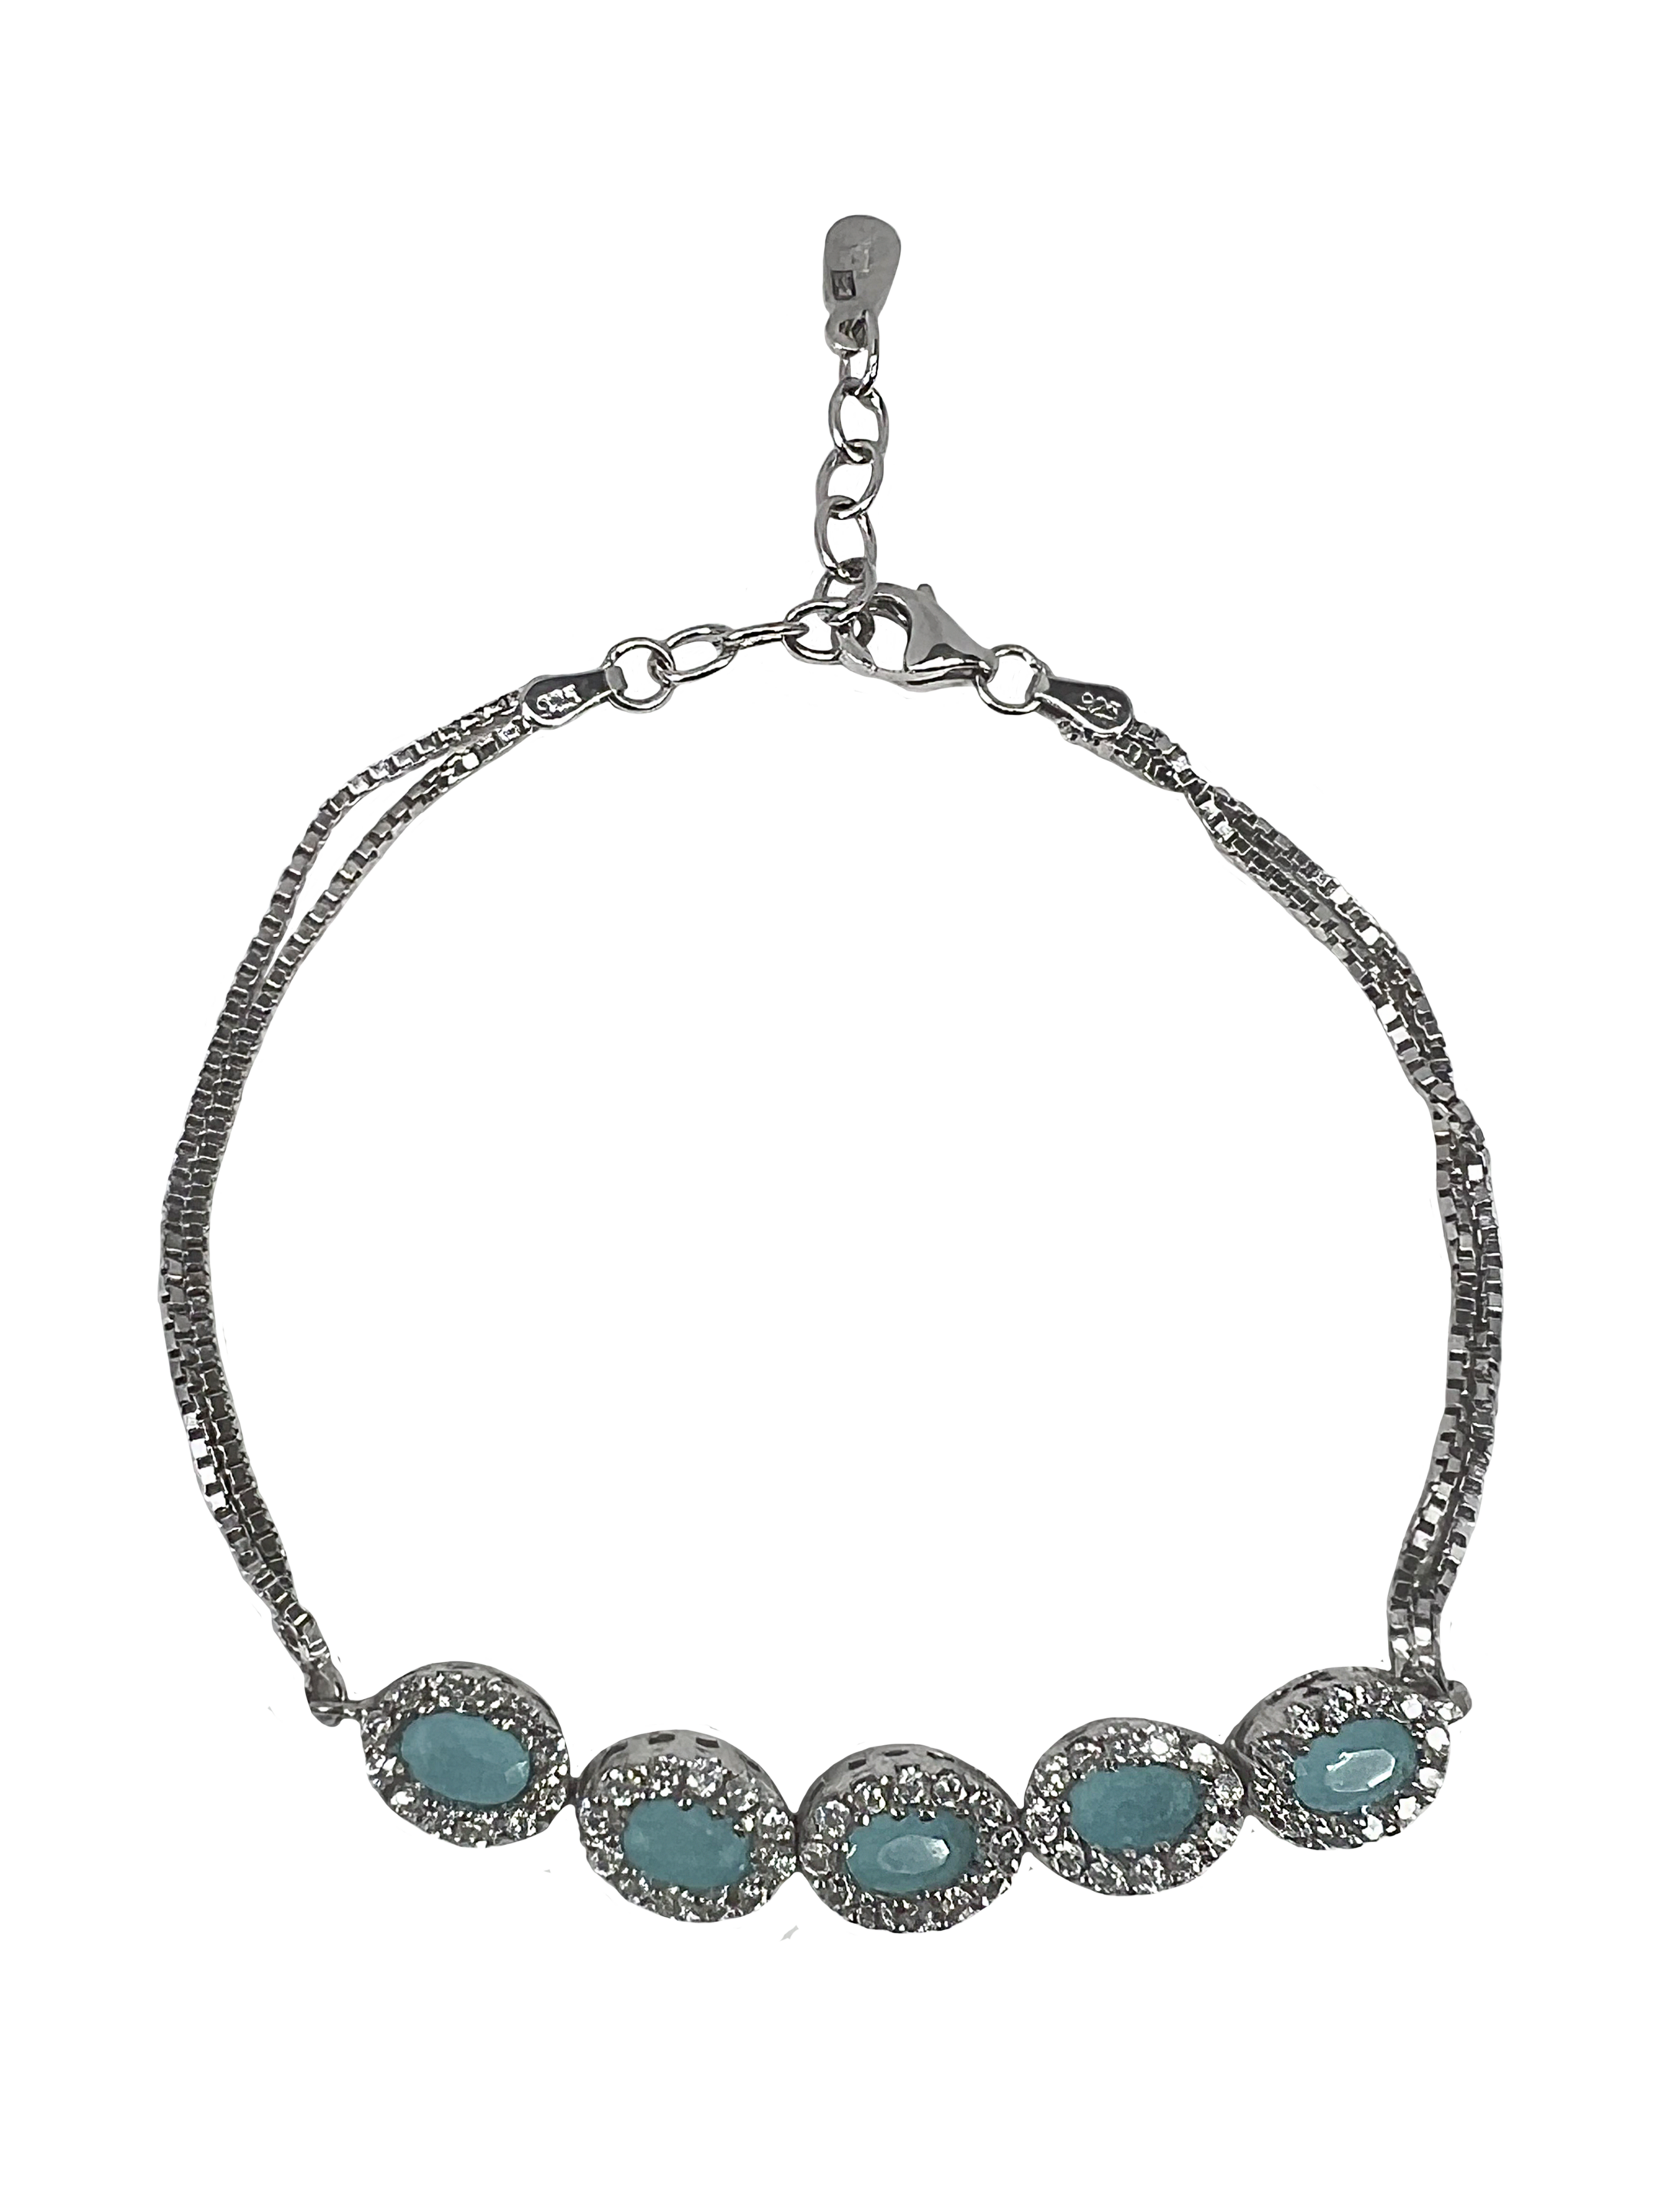 Zilveren armband met turquoise stenen en kristallen